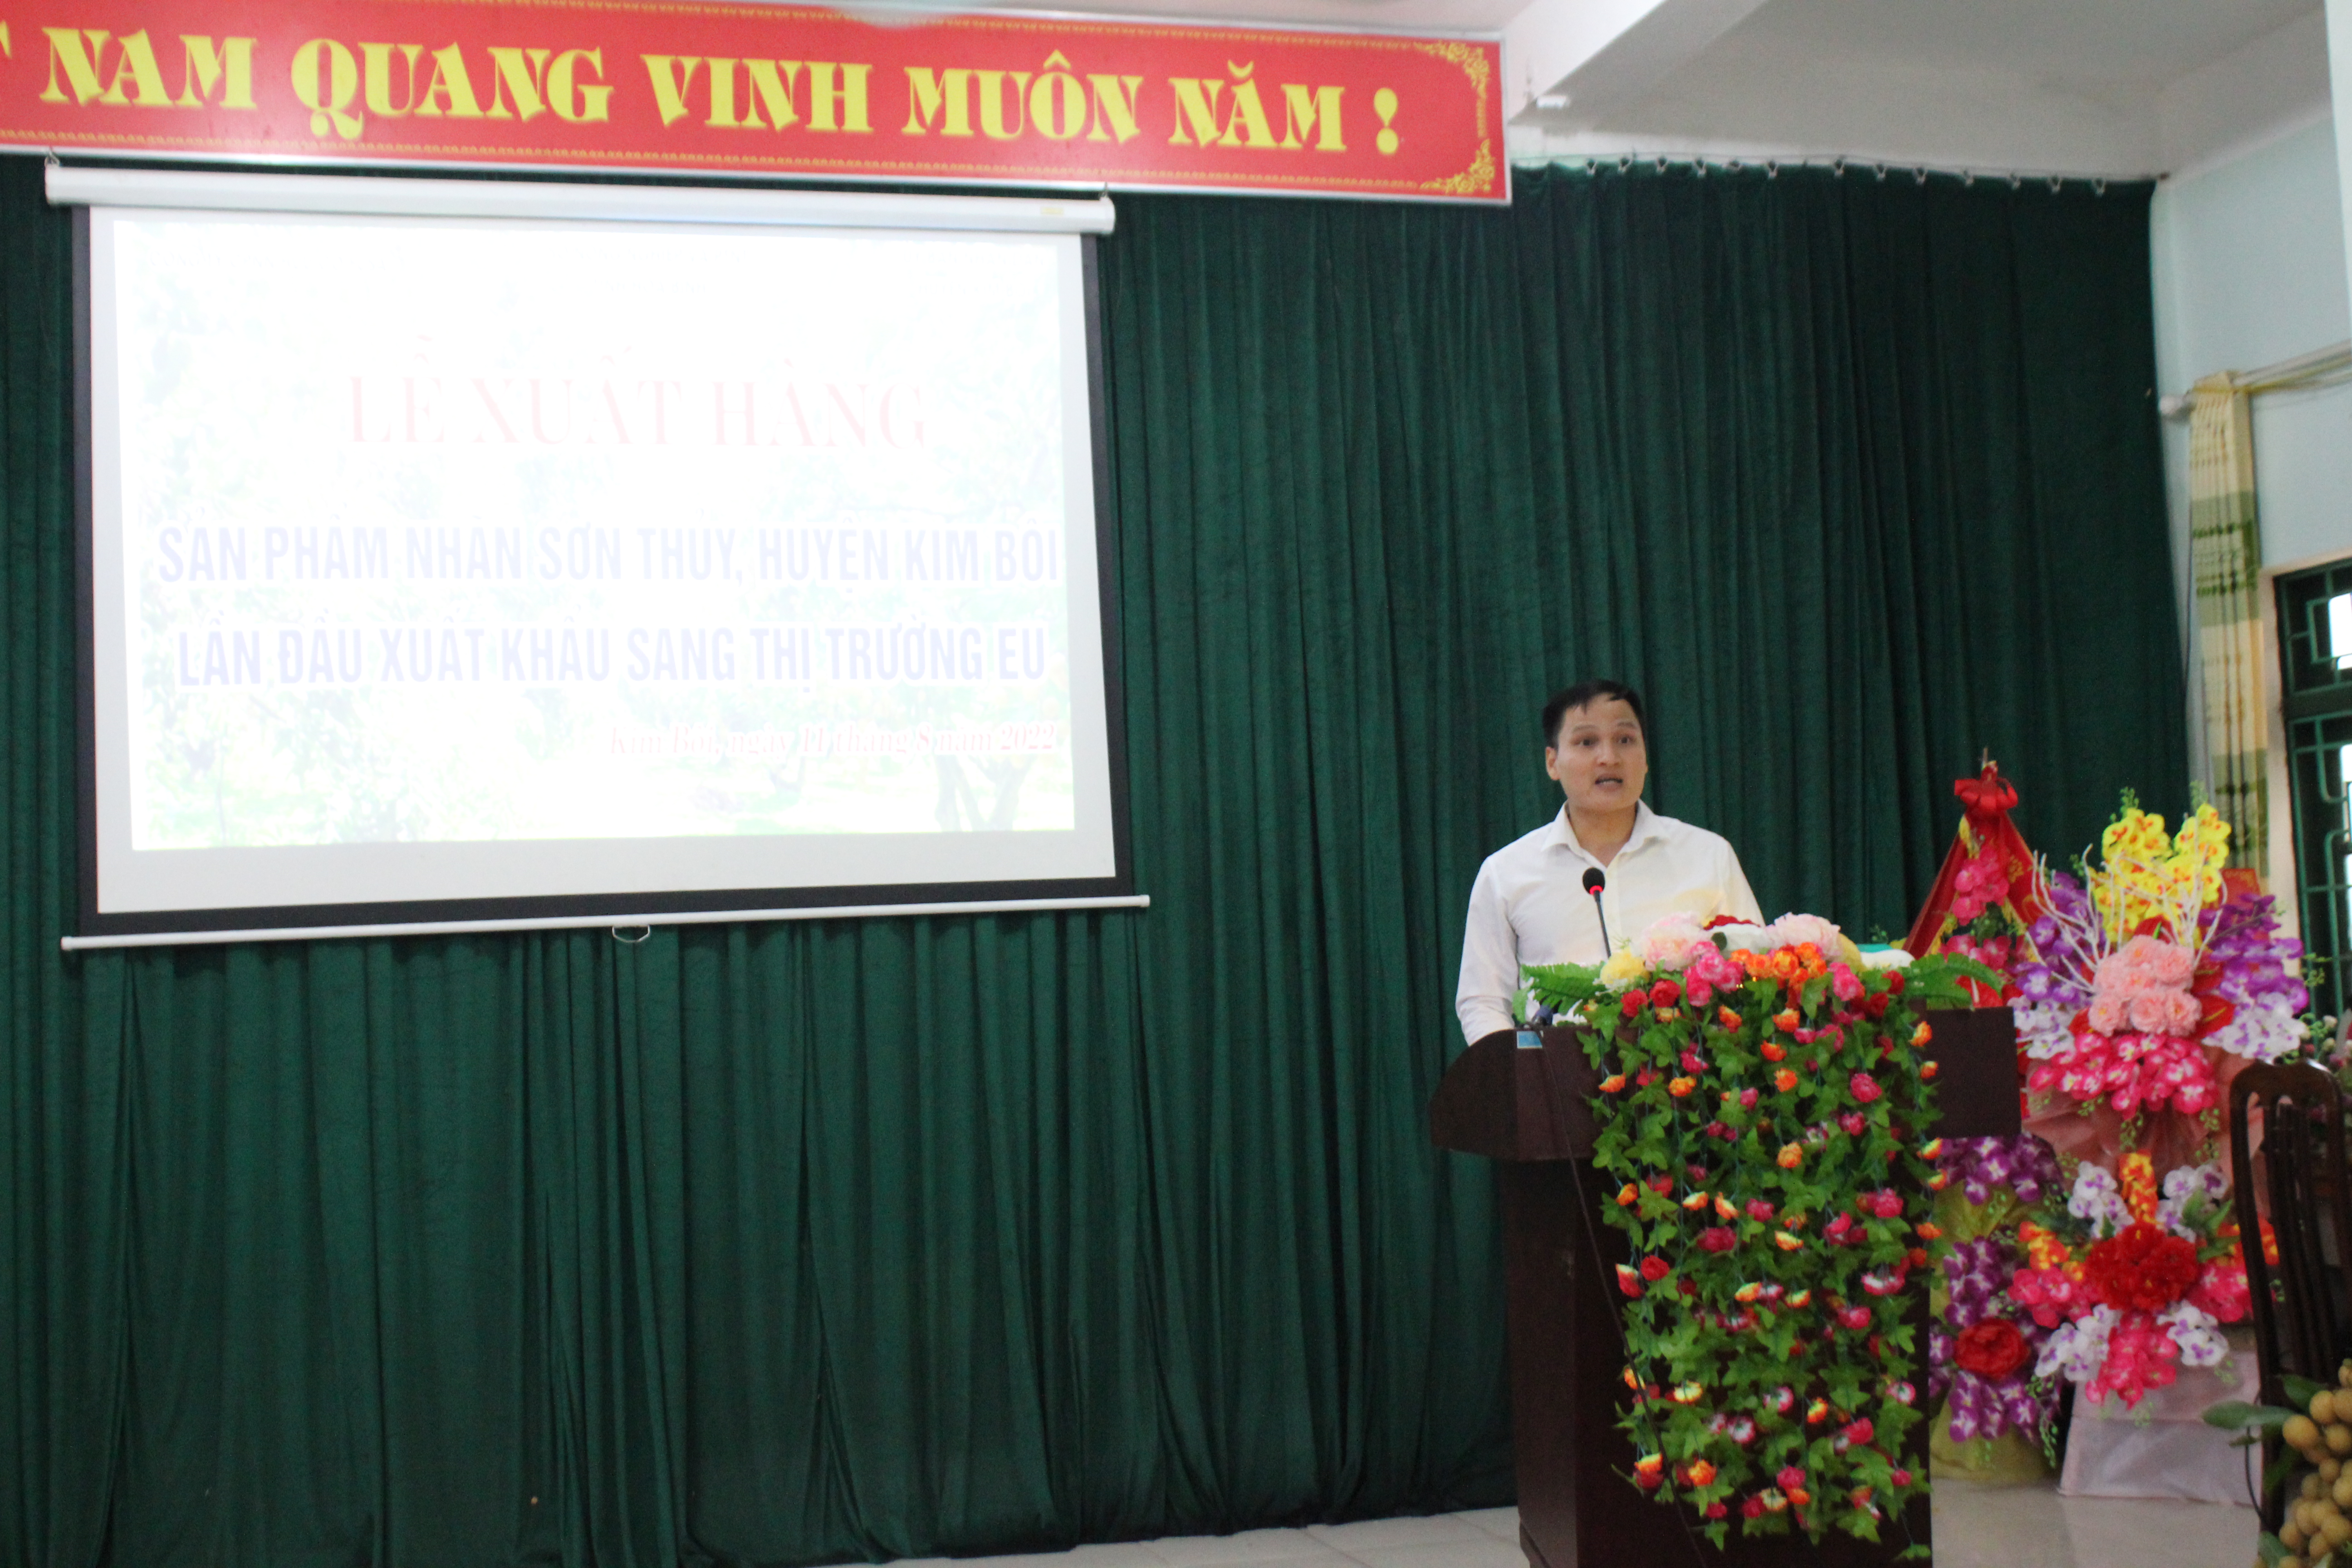 Ông Nguyễn Đức Cảnh - Tổng Giám đốc Công ty Cổ phần Nông nghiệp hữu cơ Fusa phát biểu tại buổi lễ. Ảnh: Phi Long